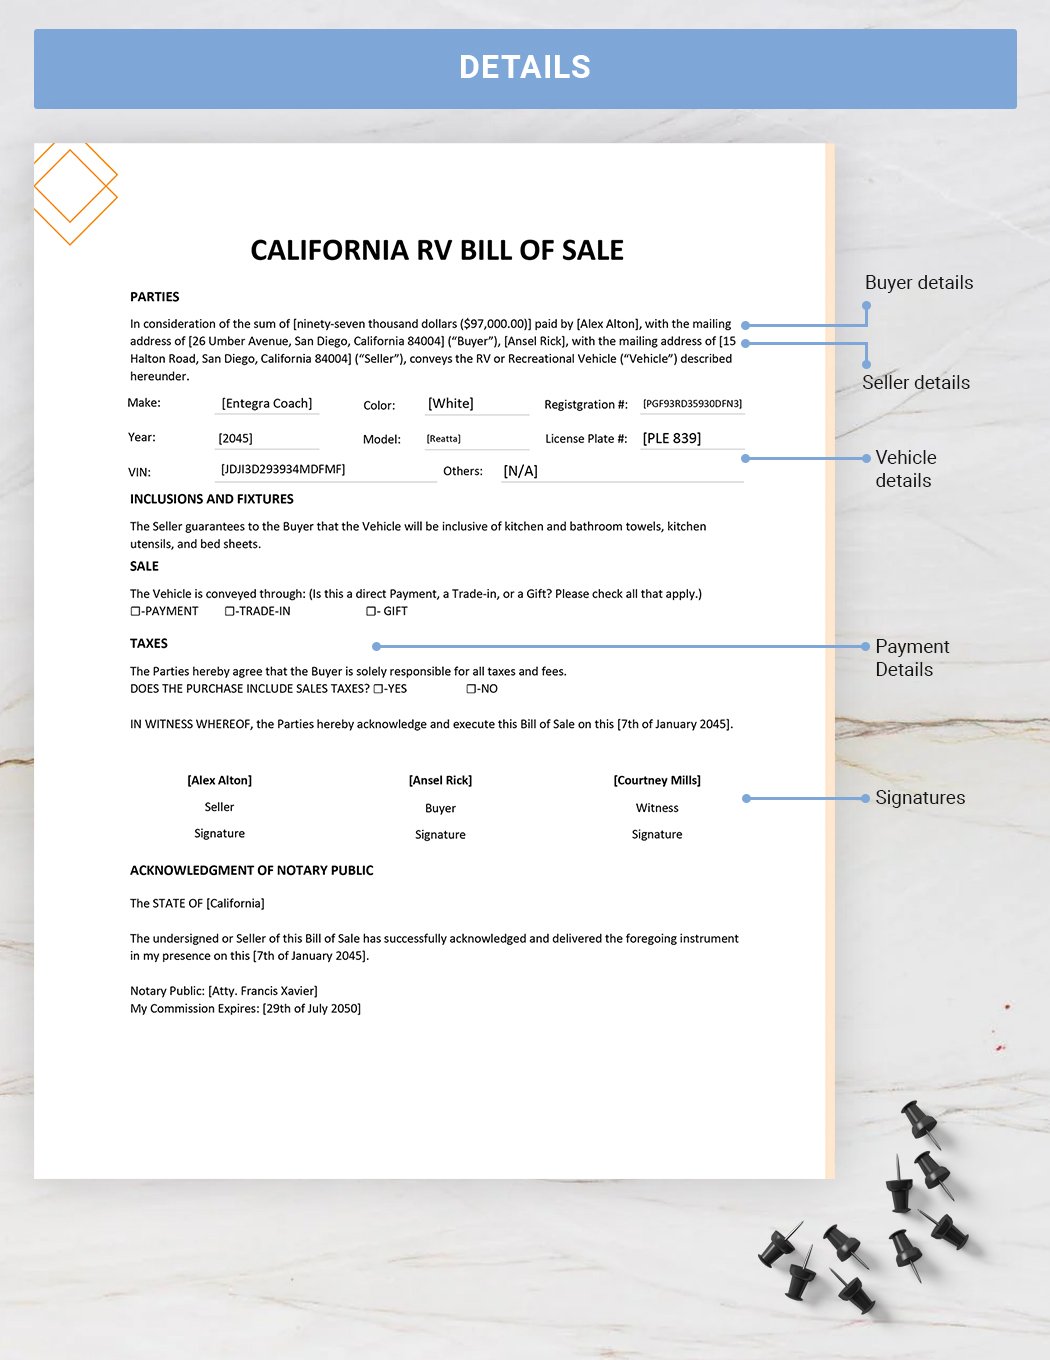 California RV Bill of Sale Template